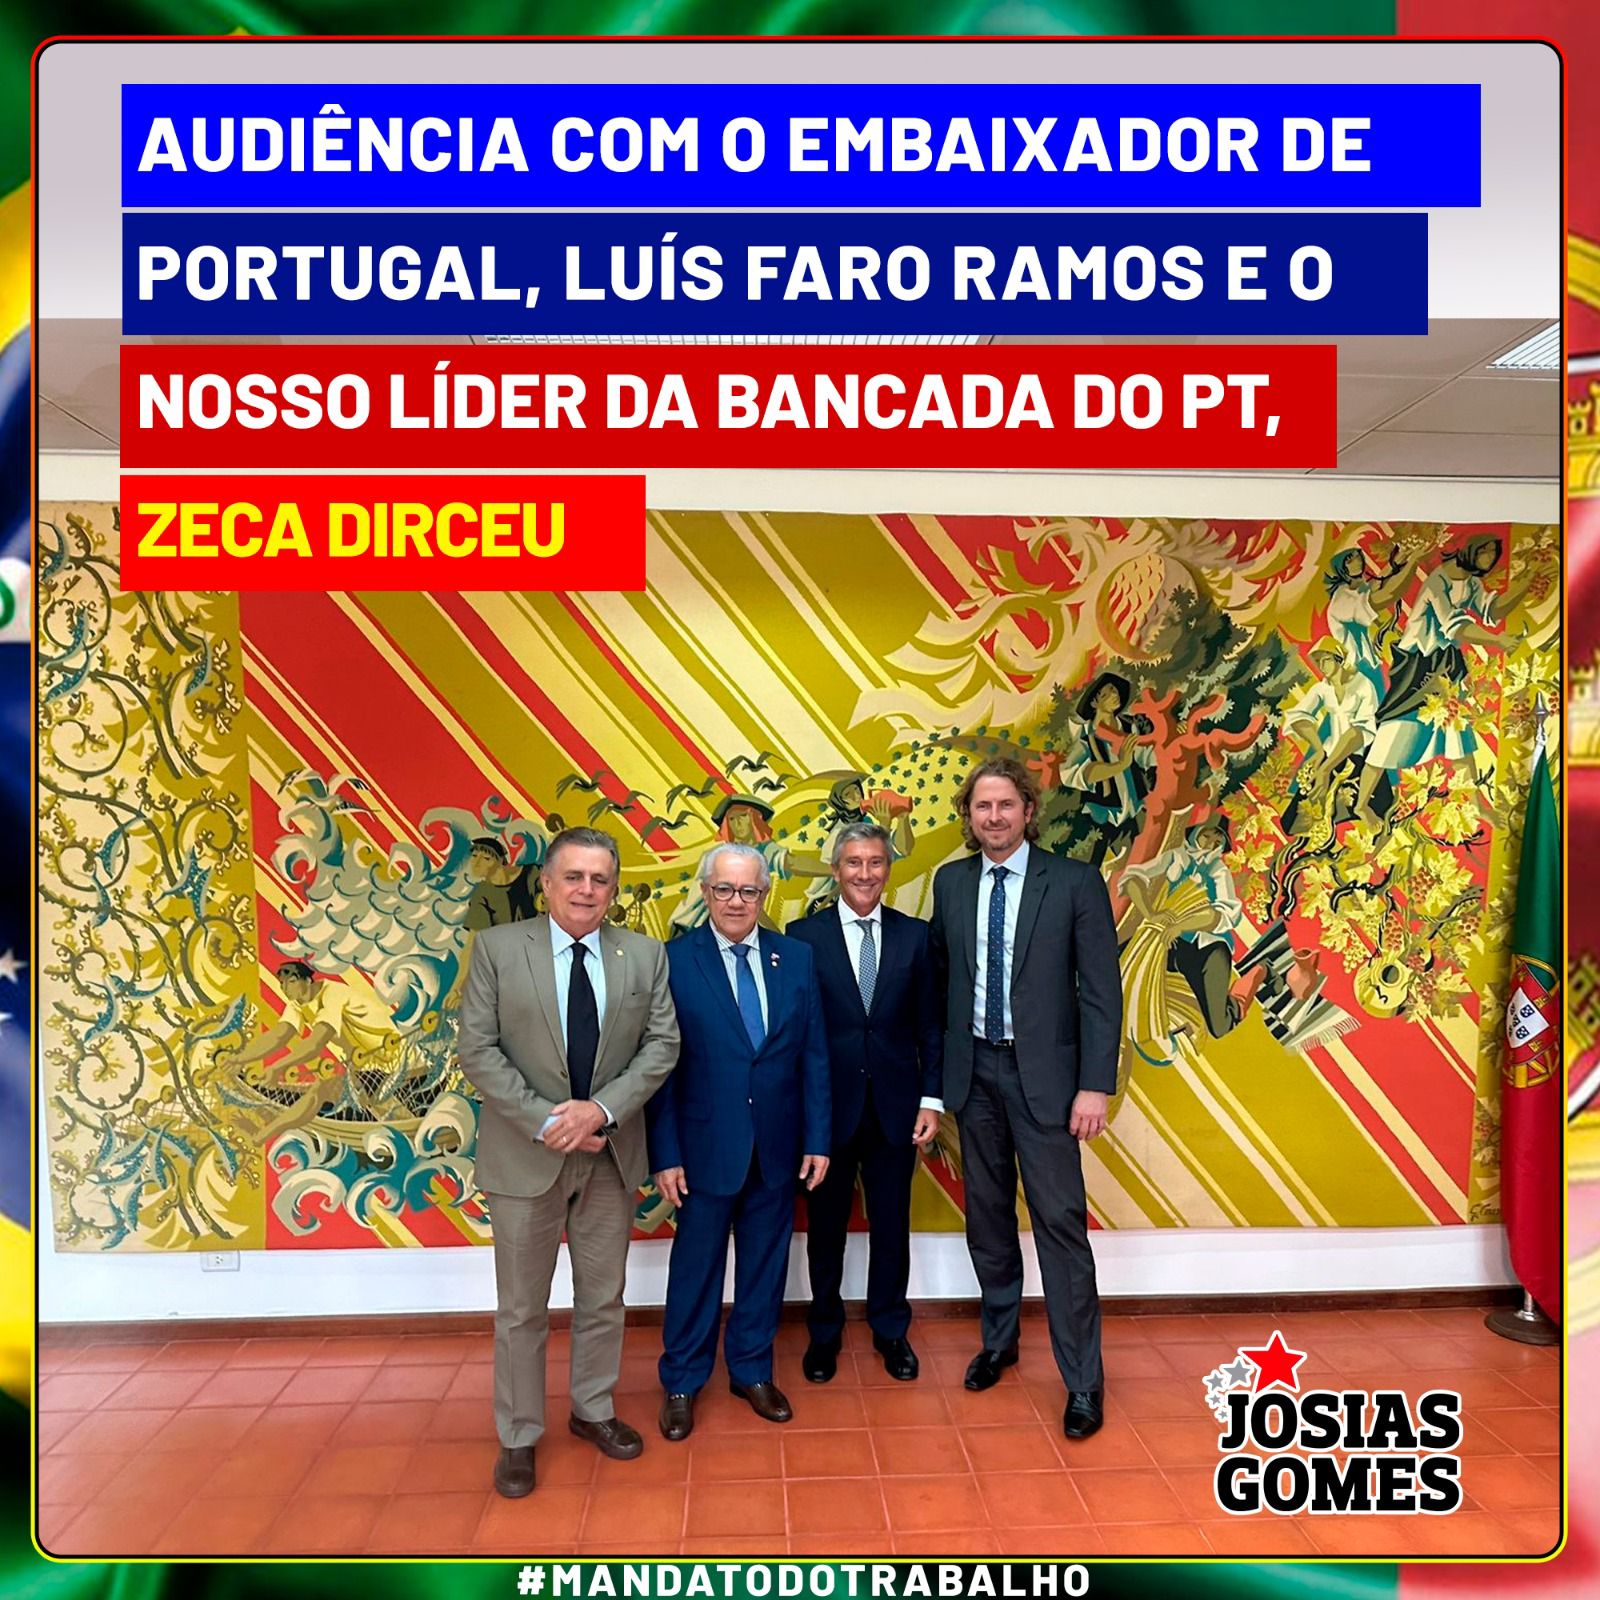 Lideranças Da Bancada Do PT Participam De Reunião Na Embaixada De Portugal